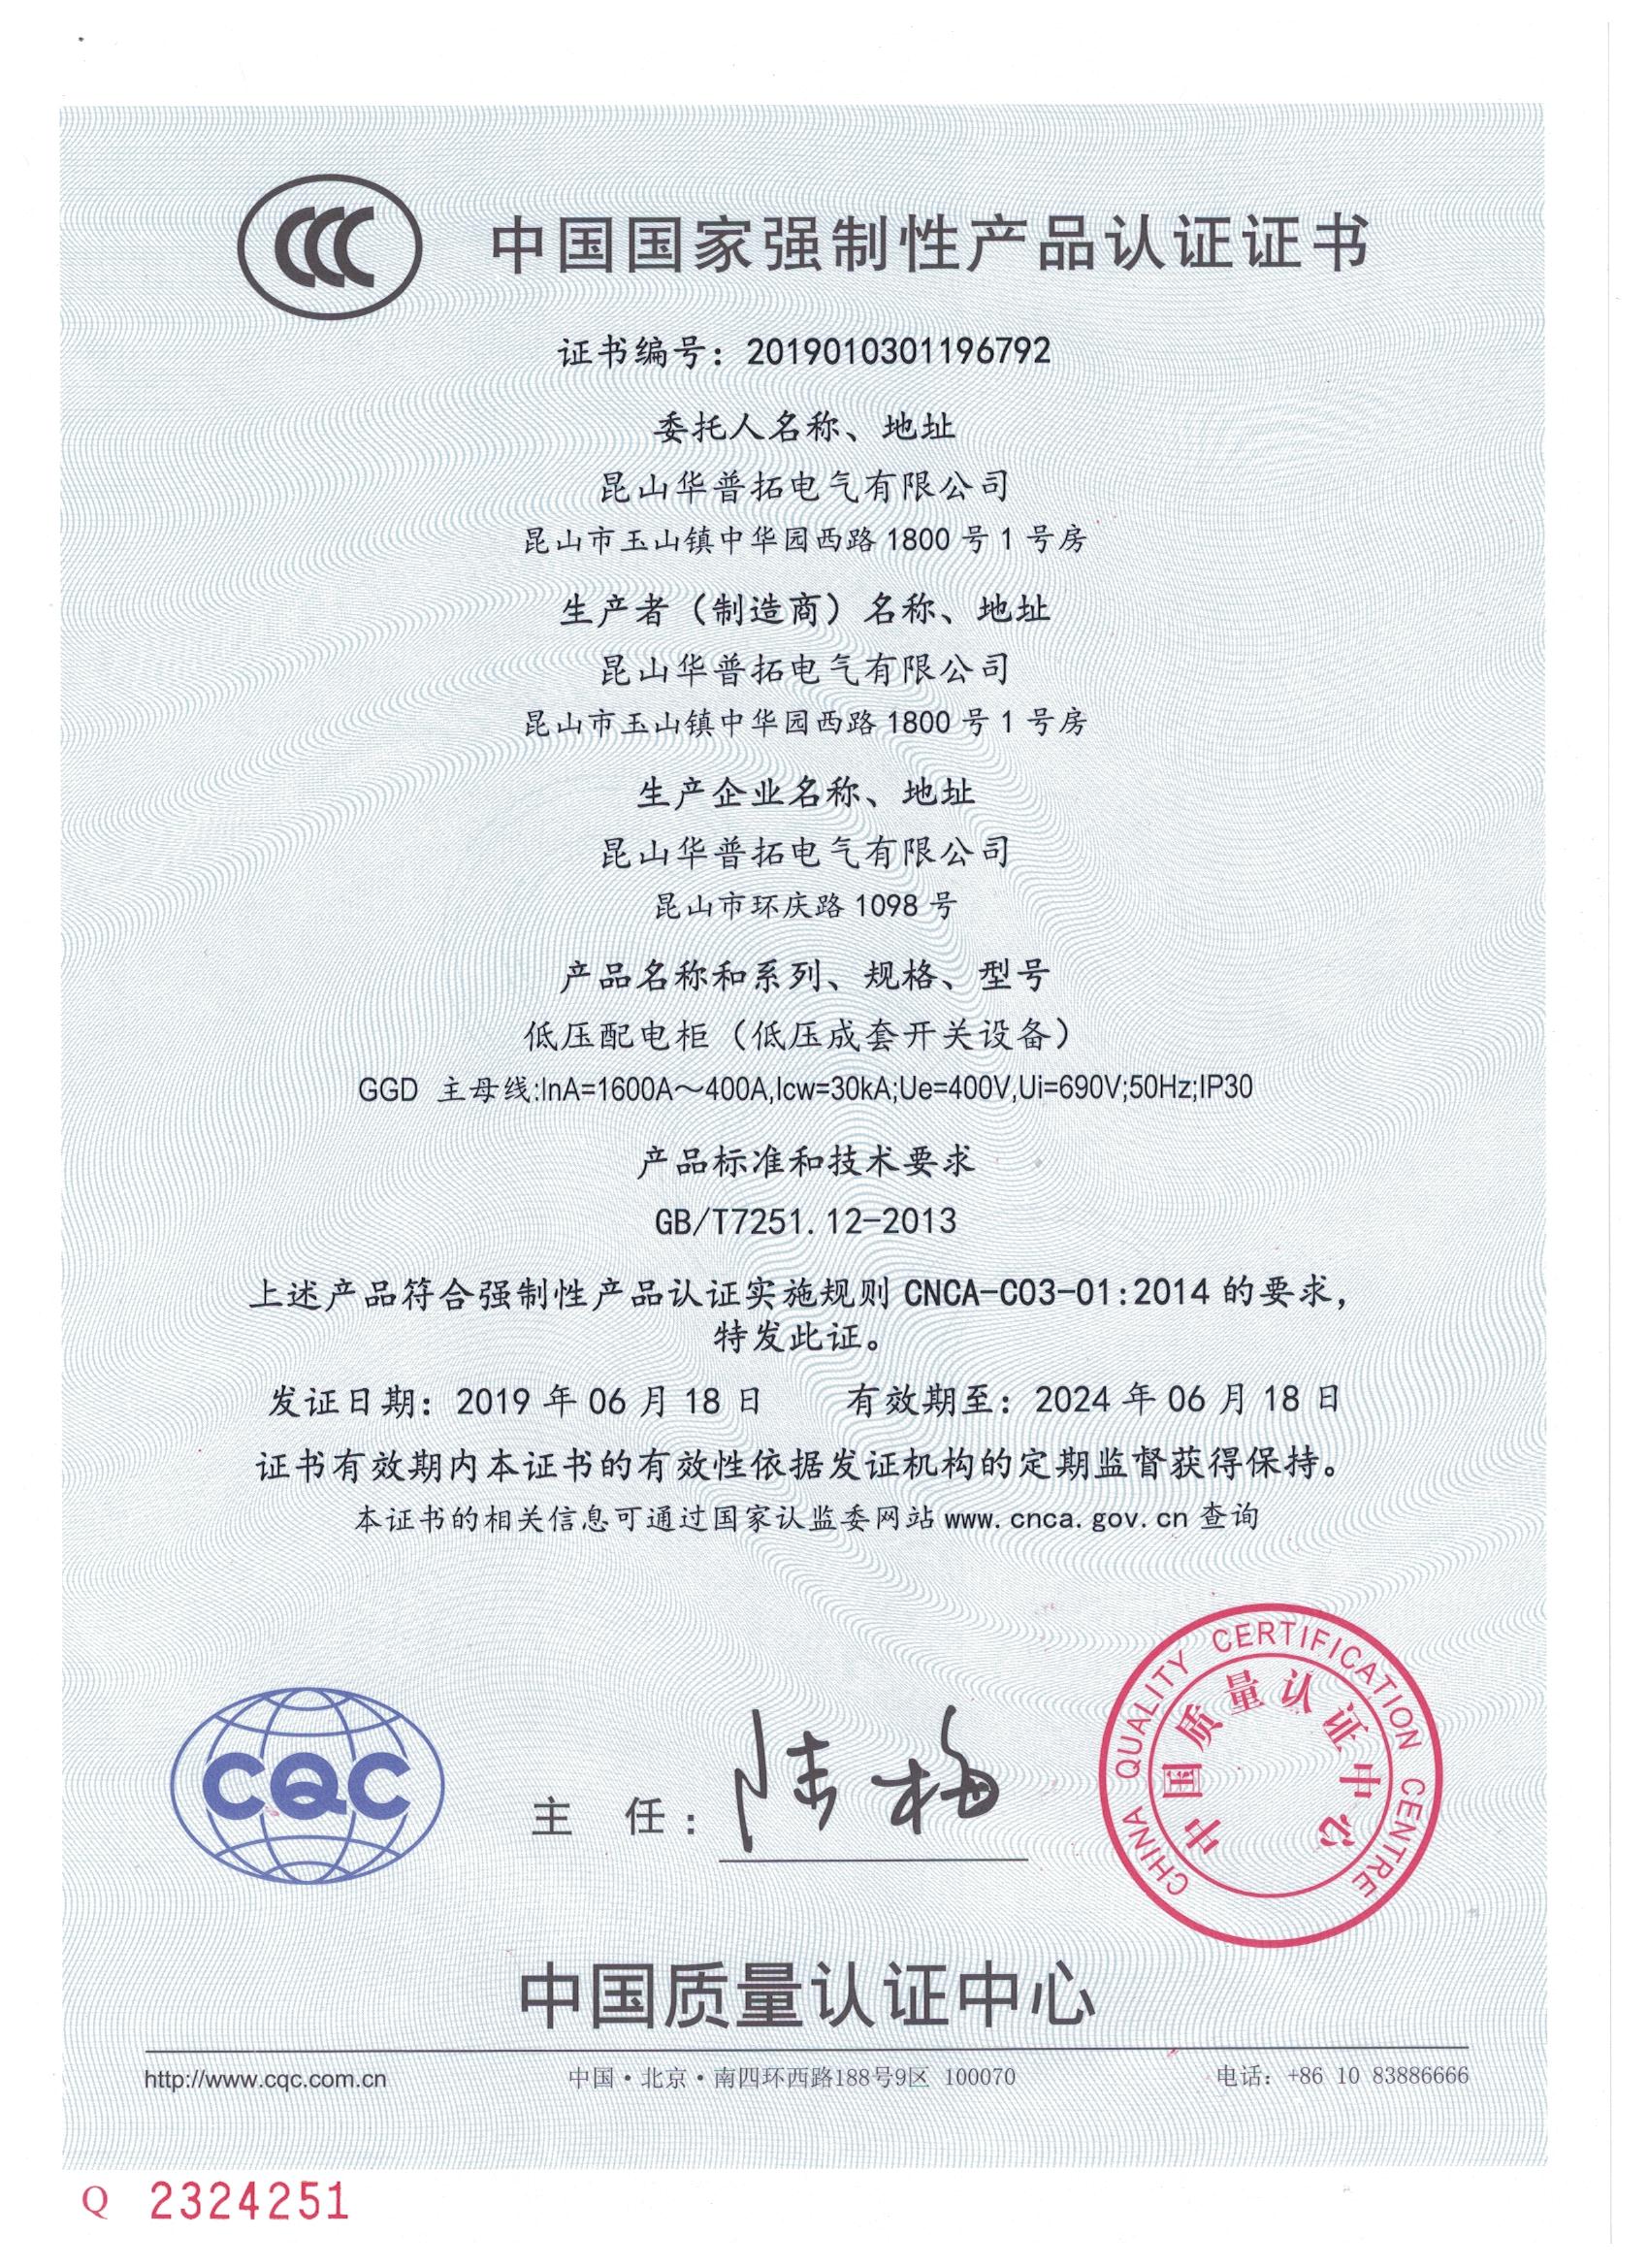 华普拓产品3C认证证书英文